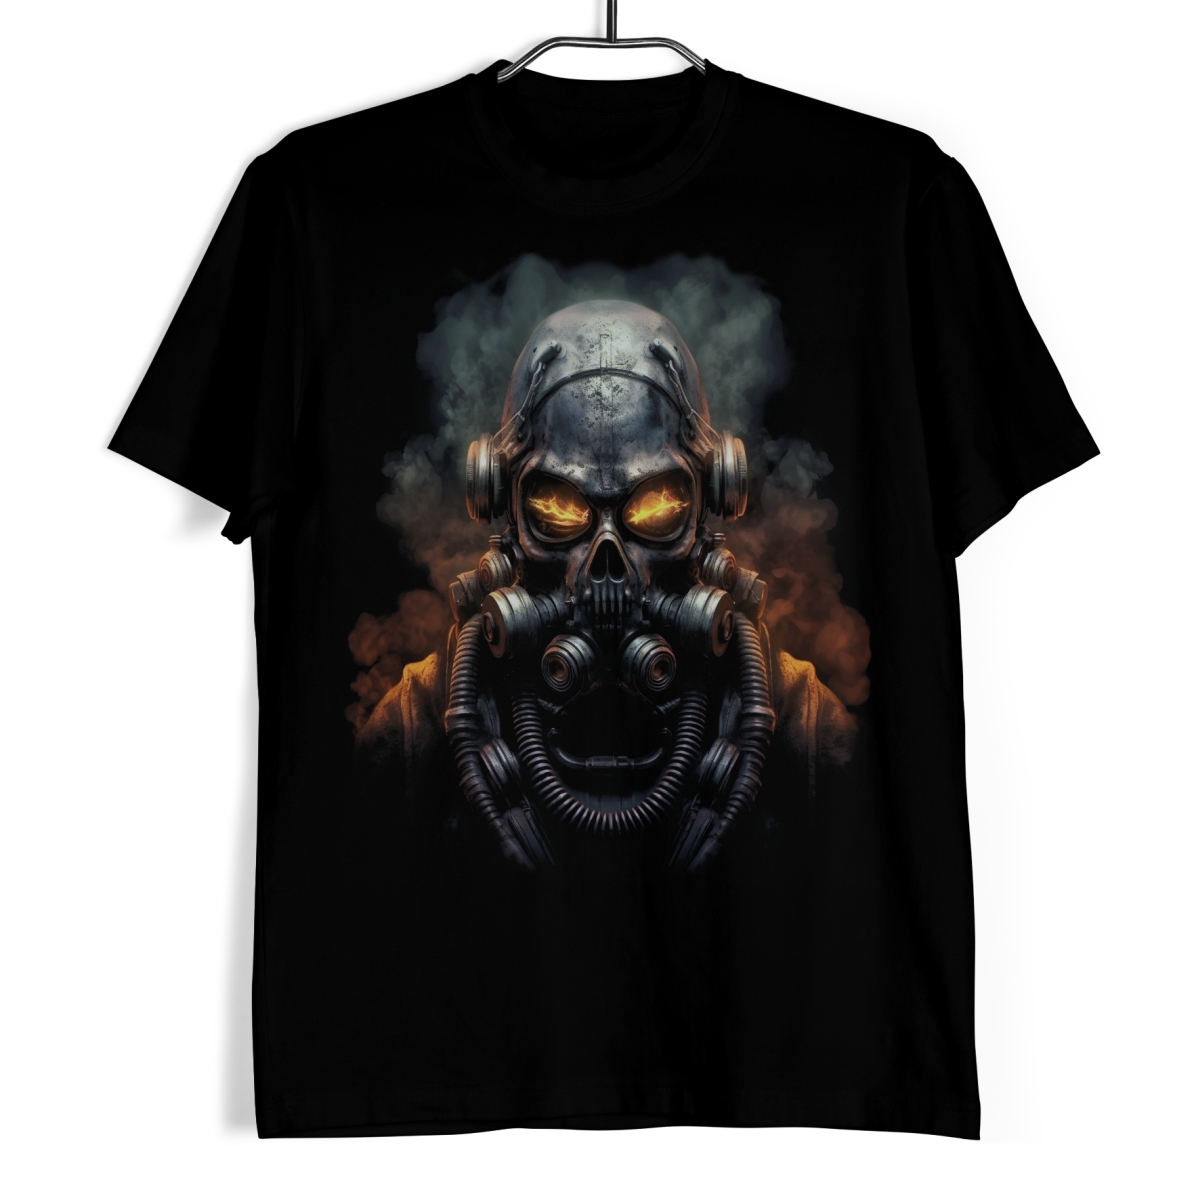 Tričko s lebkou - FuturaSkull Echo XXL